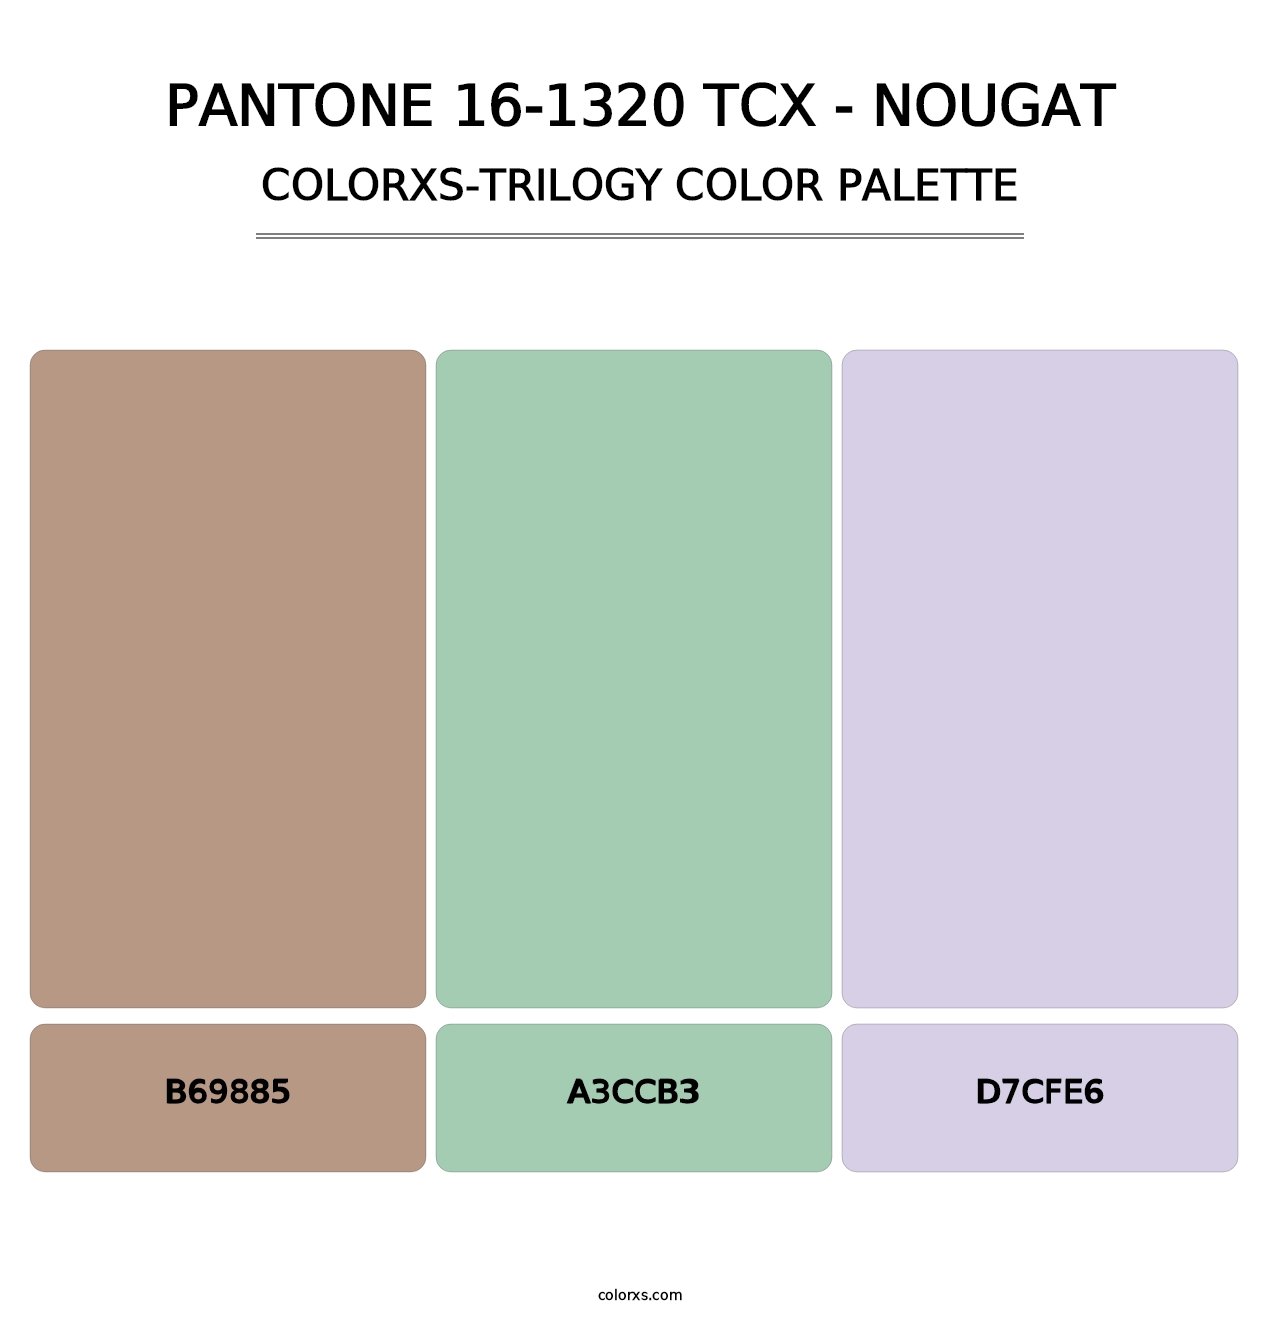 PANTONE 16-1320 TCX - Nougat - Colorxs Trilogy Palette